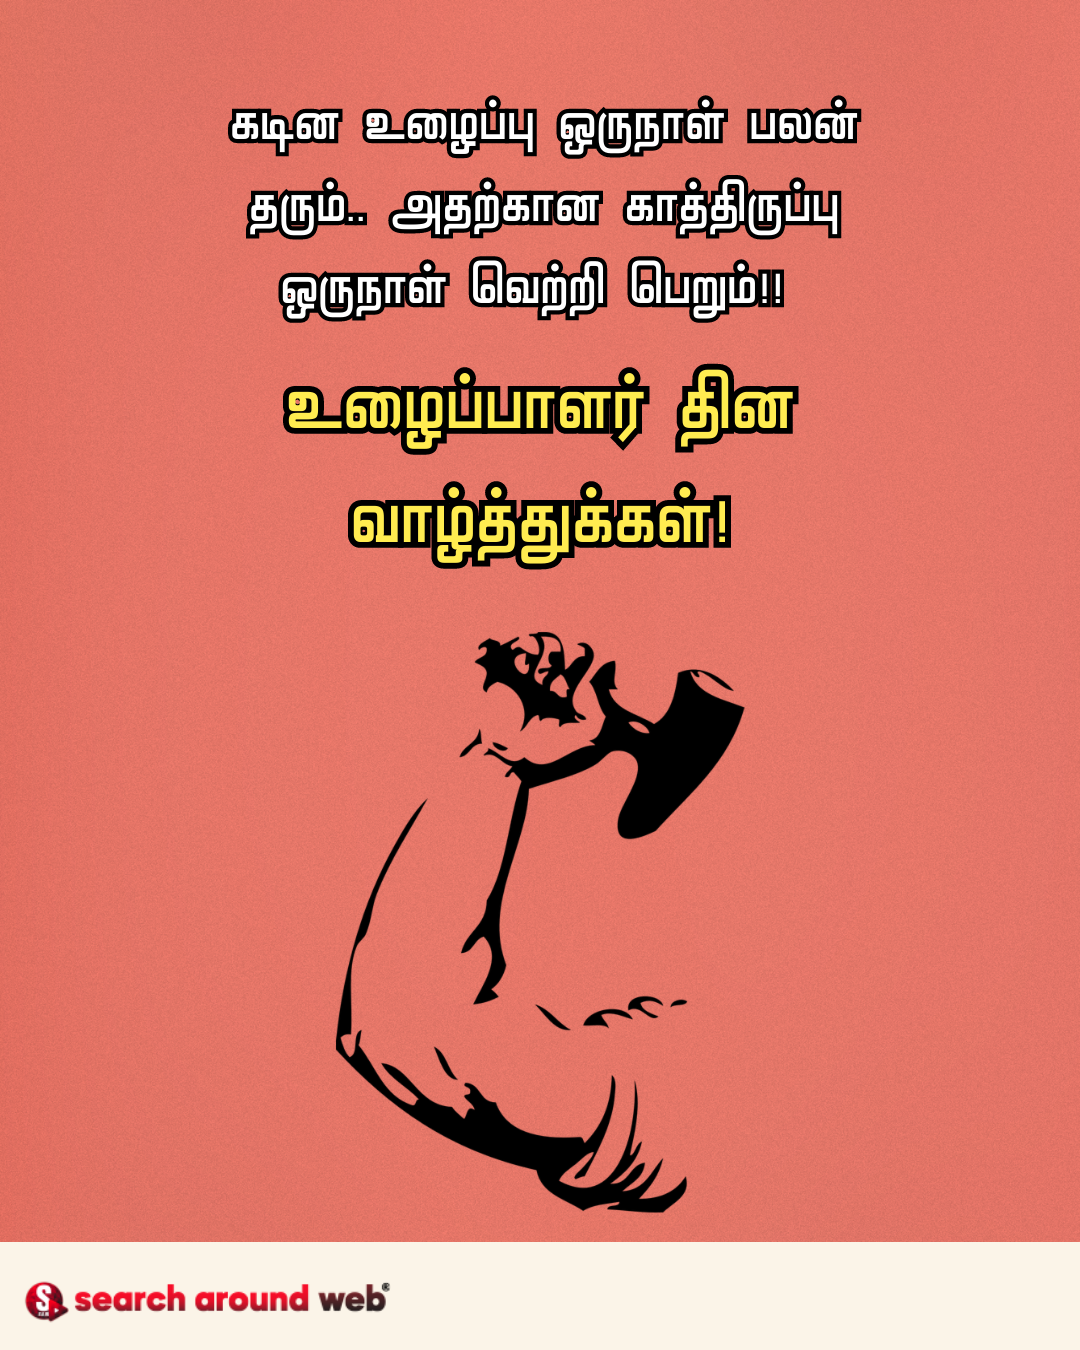 உழைக்கும் உள்ளங்களுக்கு தொழிலாளர் தின வாழ்த்துக்கள் 2023 | Happy May Day 2023 Wishes in Tamil